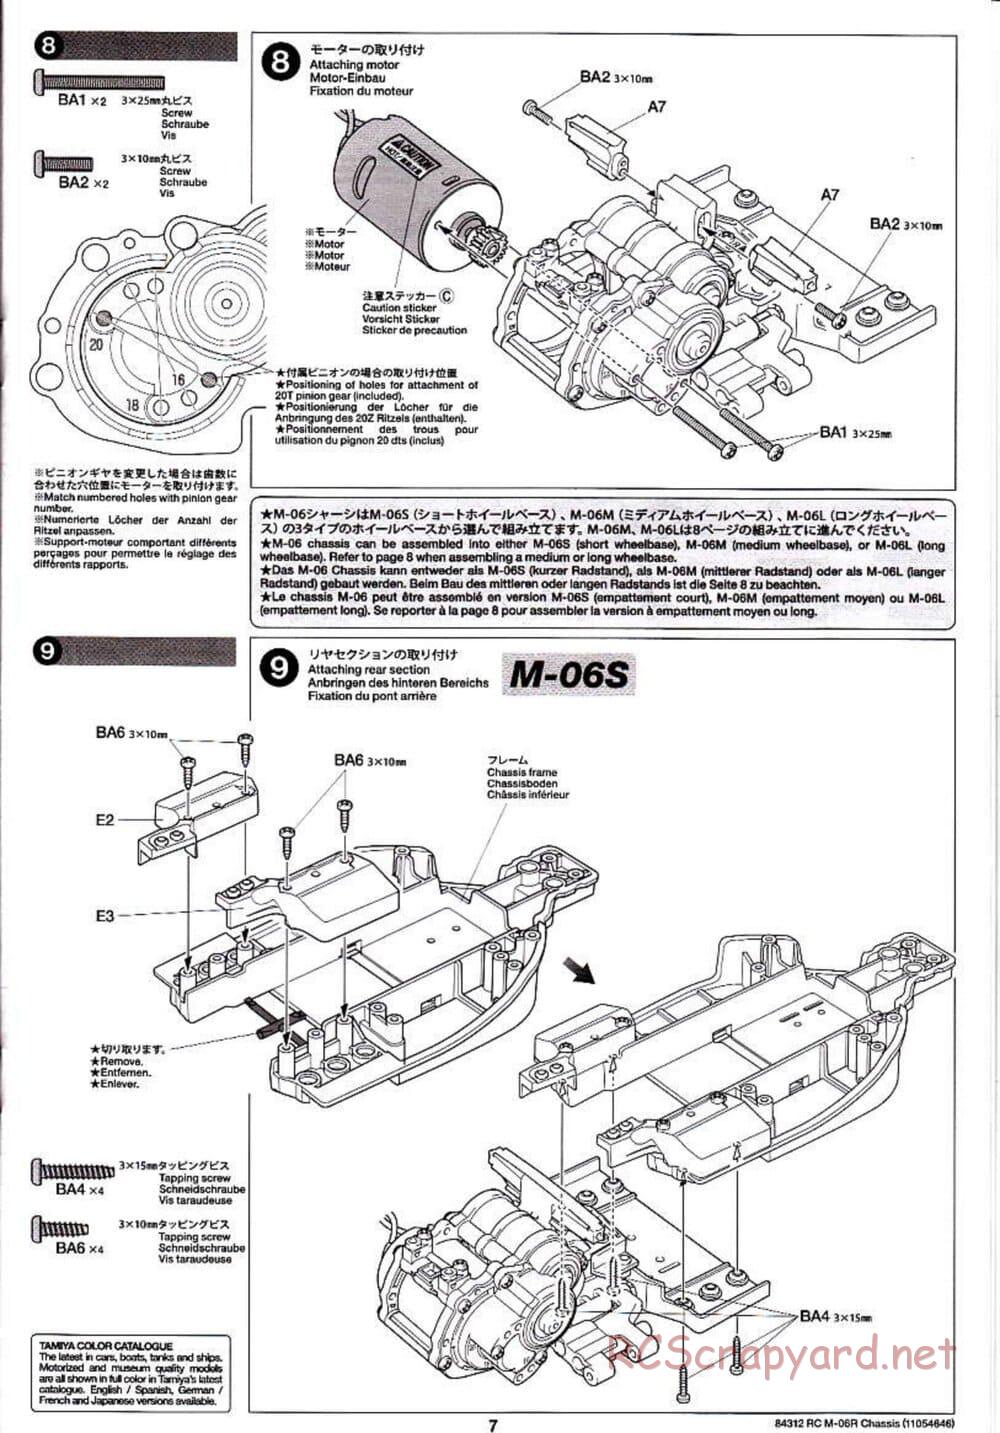 Tamiya - M-06R Chassis - Manual - Page 7